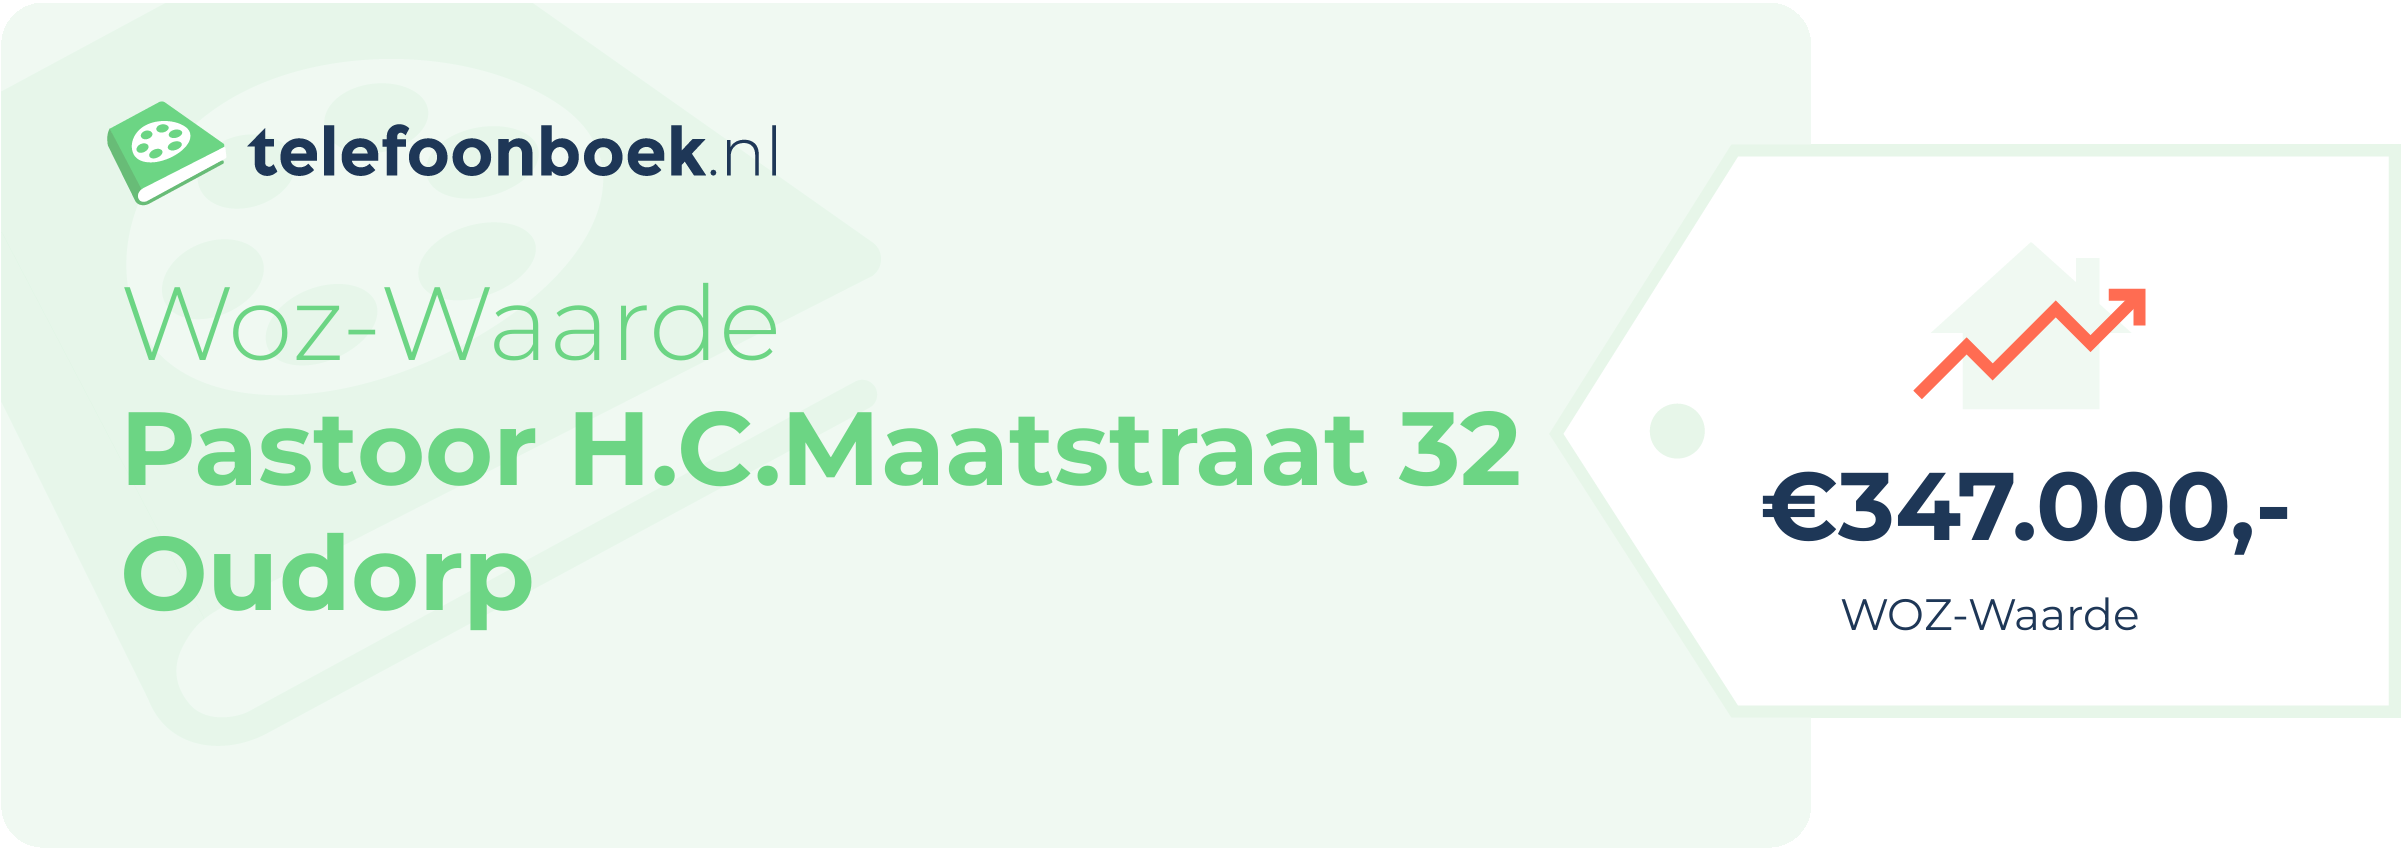 WOZ-waarde Pastoor H.C.Maatstraat 32 Oudorp